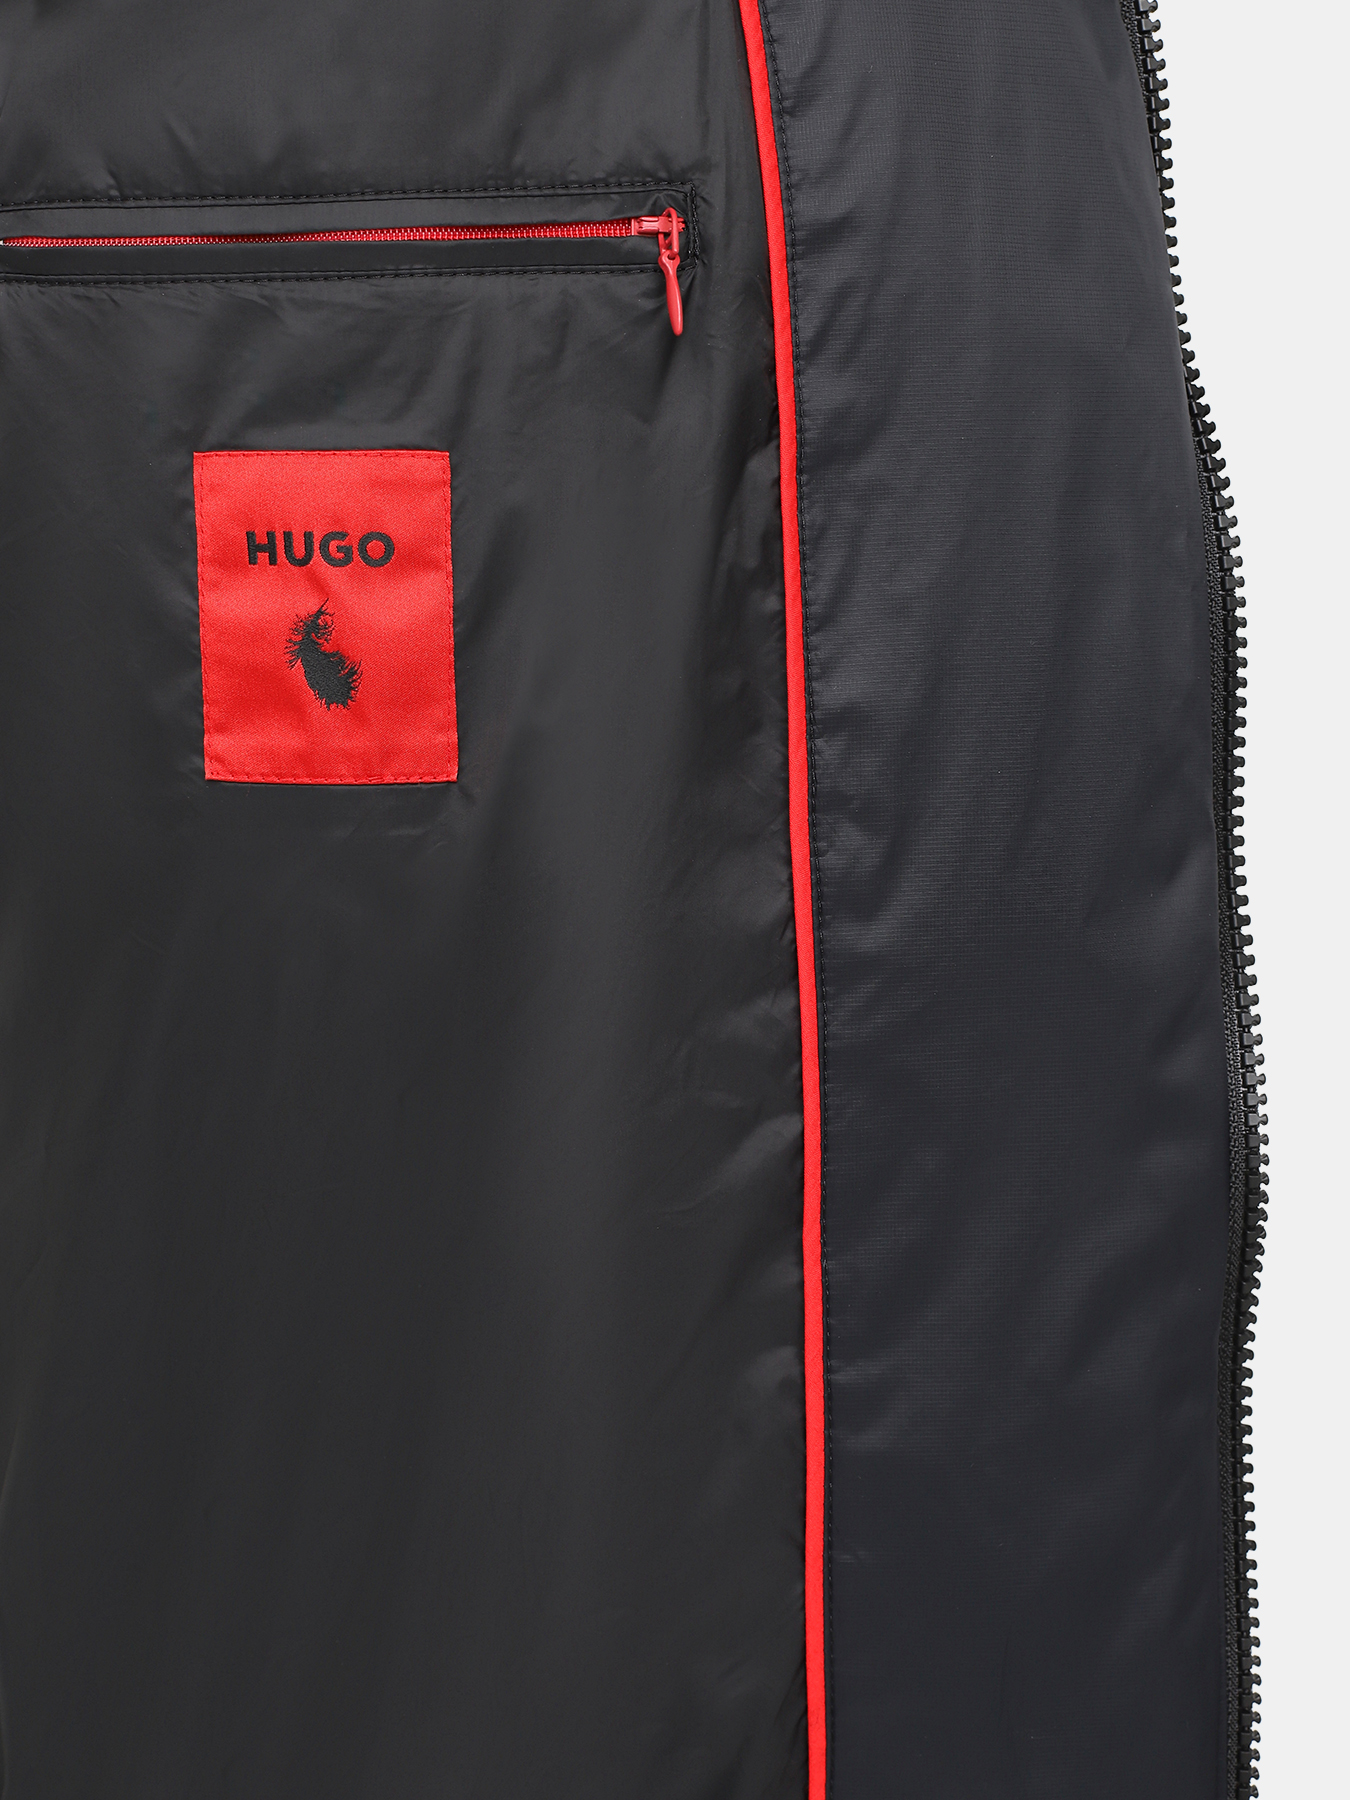 Пуховик Magnus HUGO 425325-043, цвет черный, размер 48-50 - фото 2